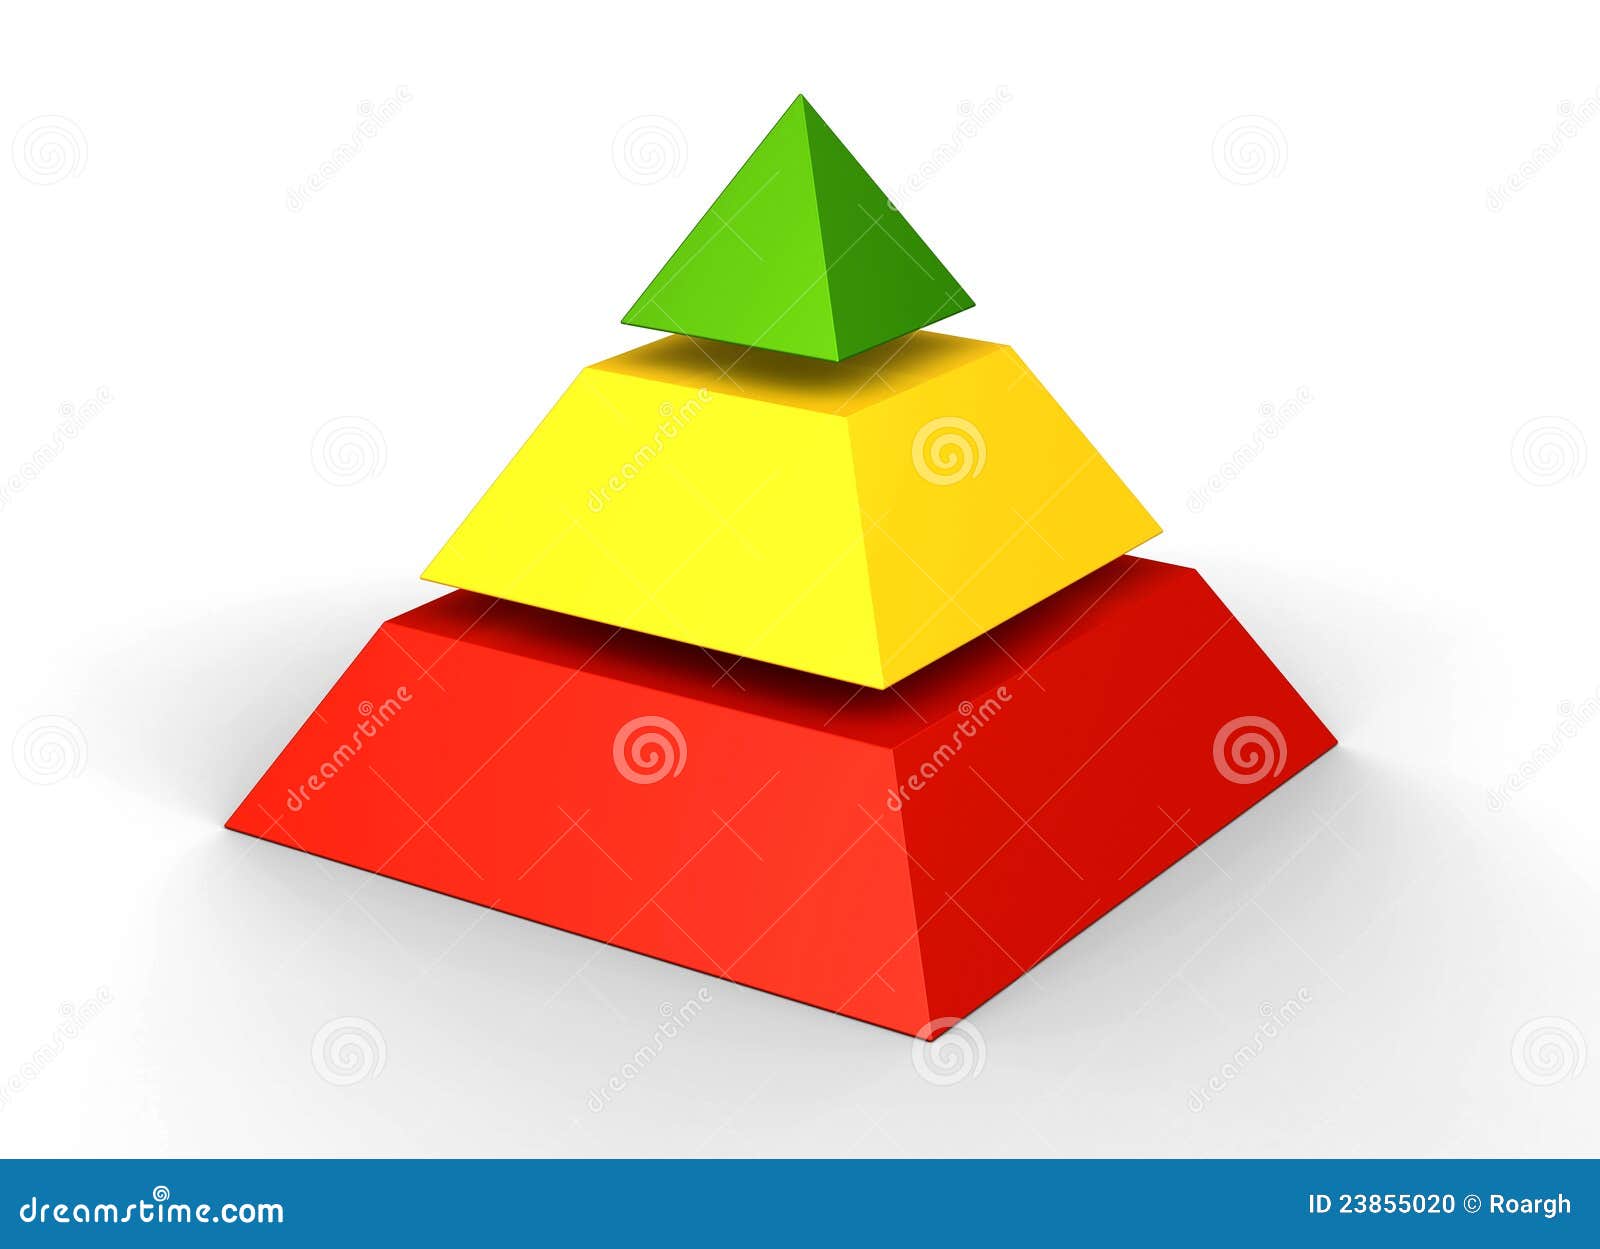 Пирамидка из трех частей